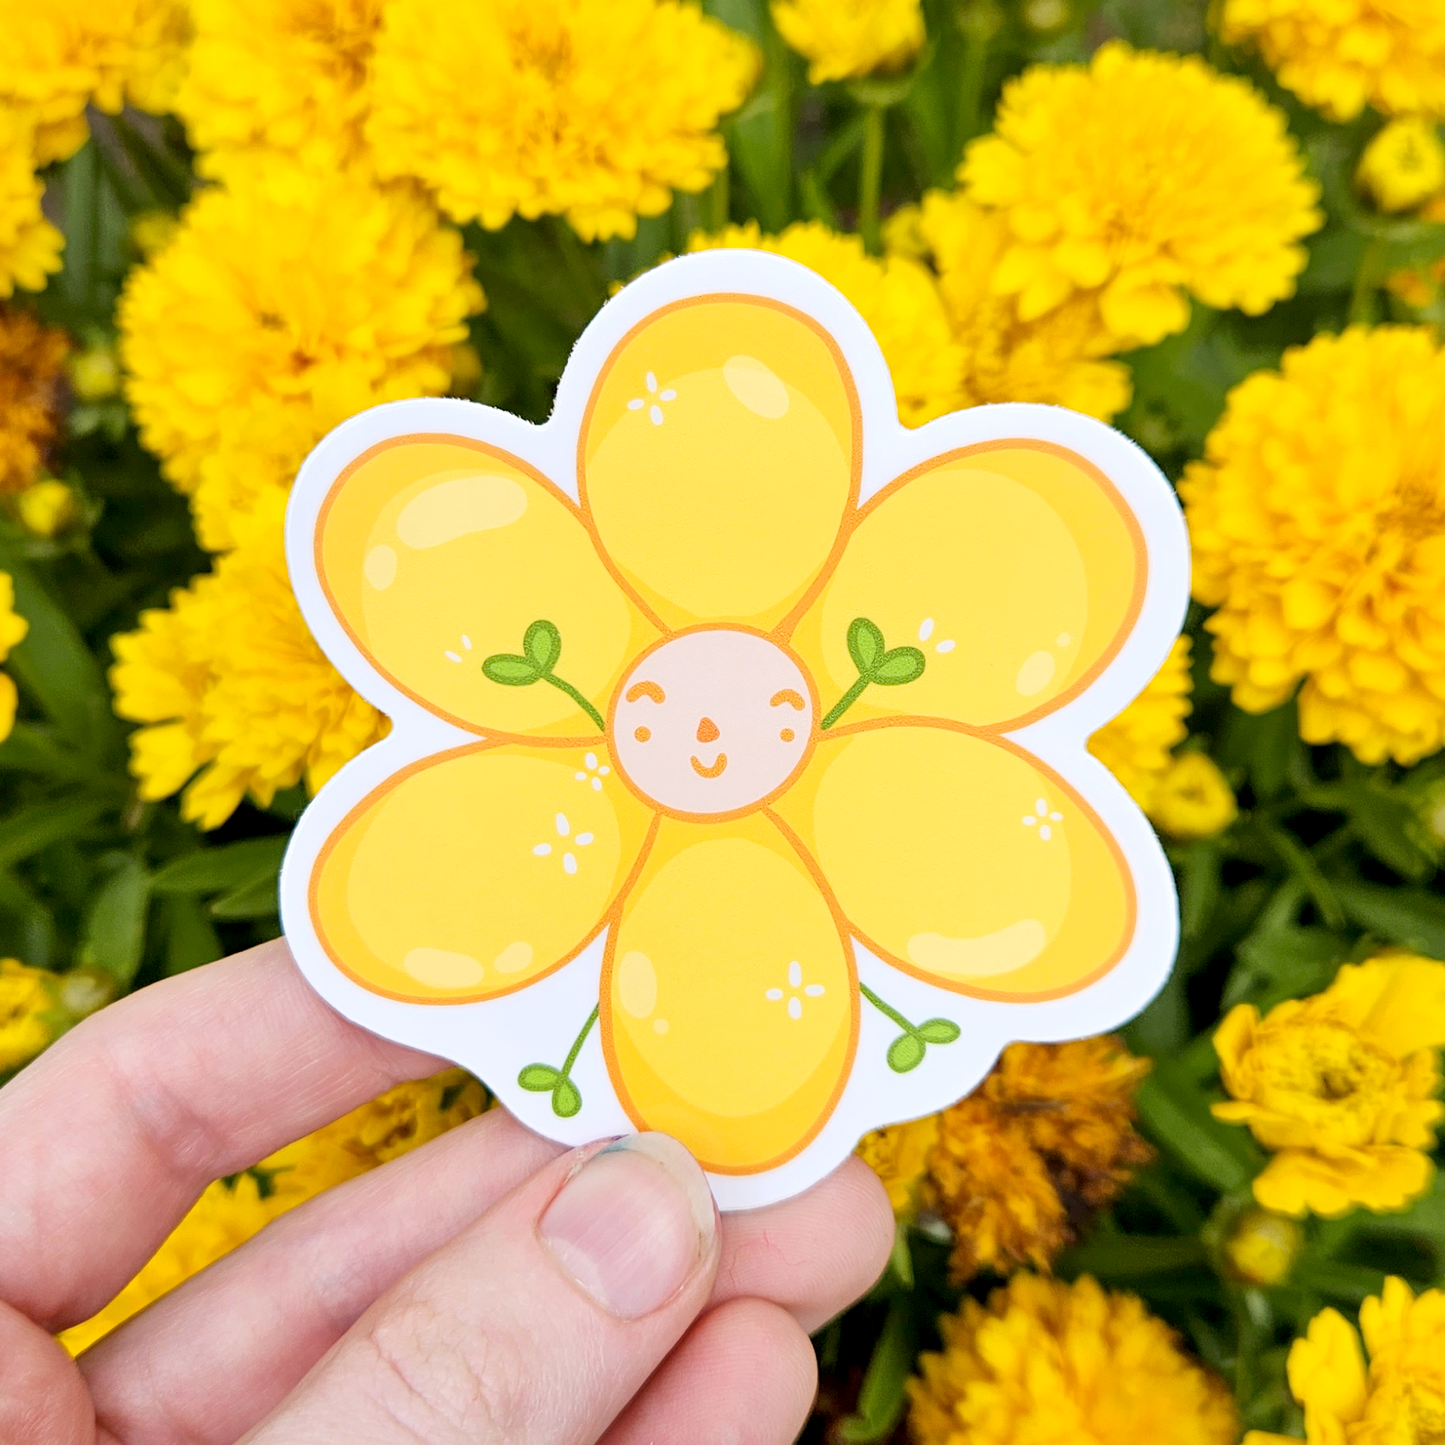 Flower friend - Mushroom Mail Sticker Design!